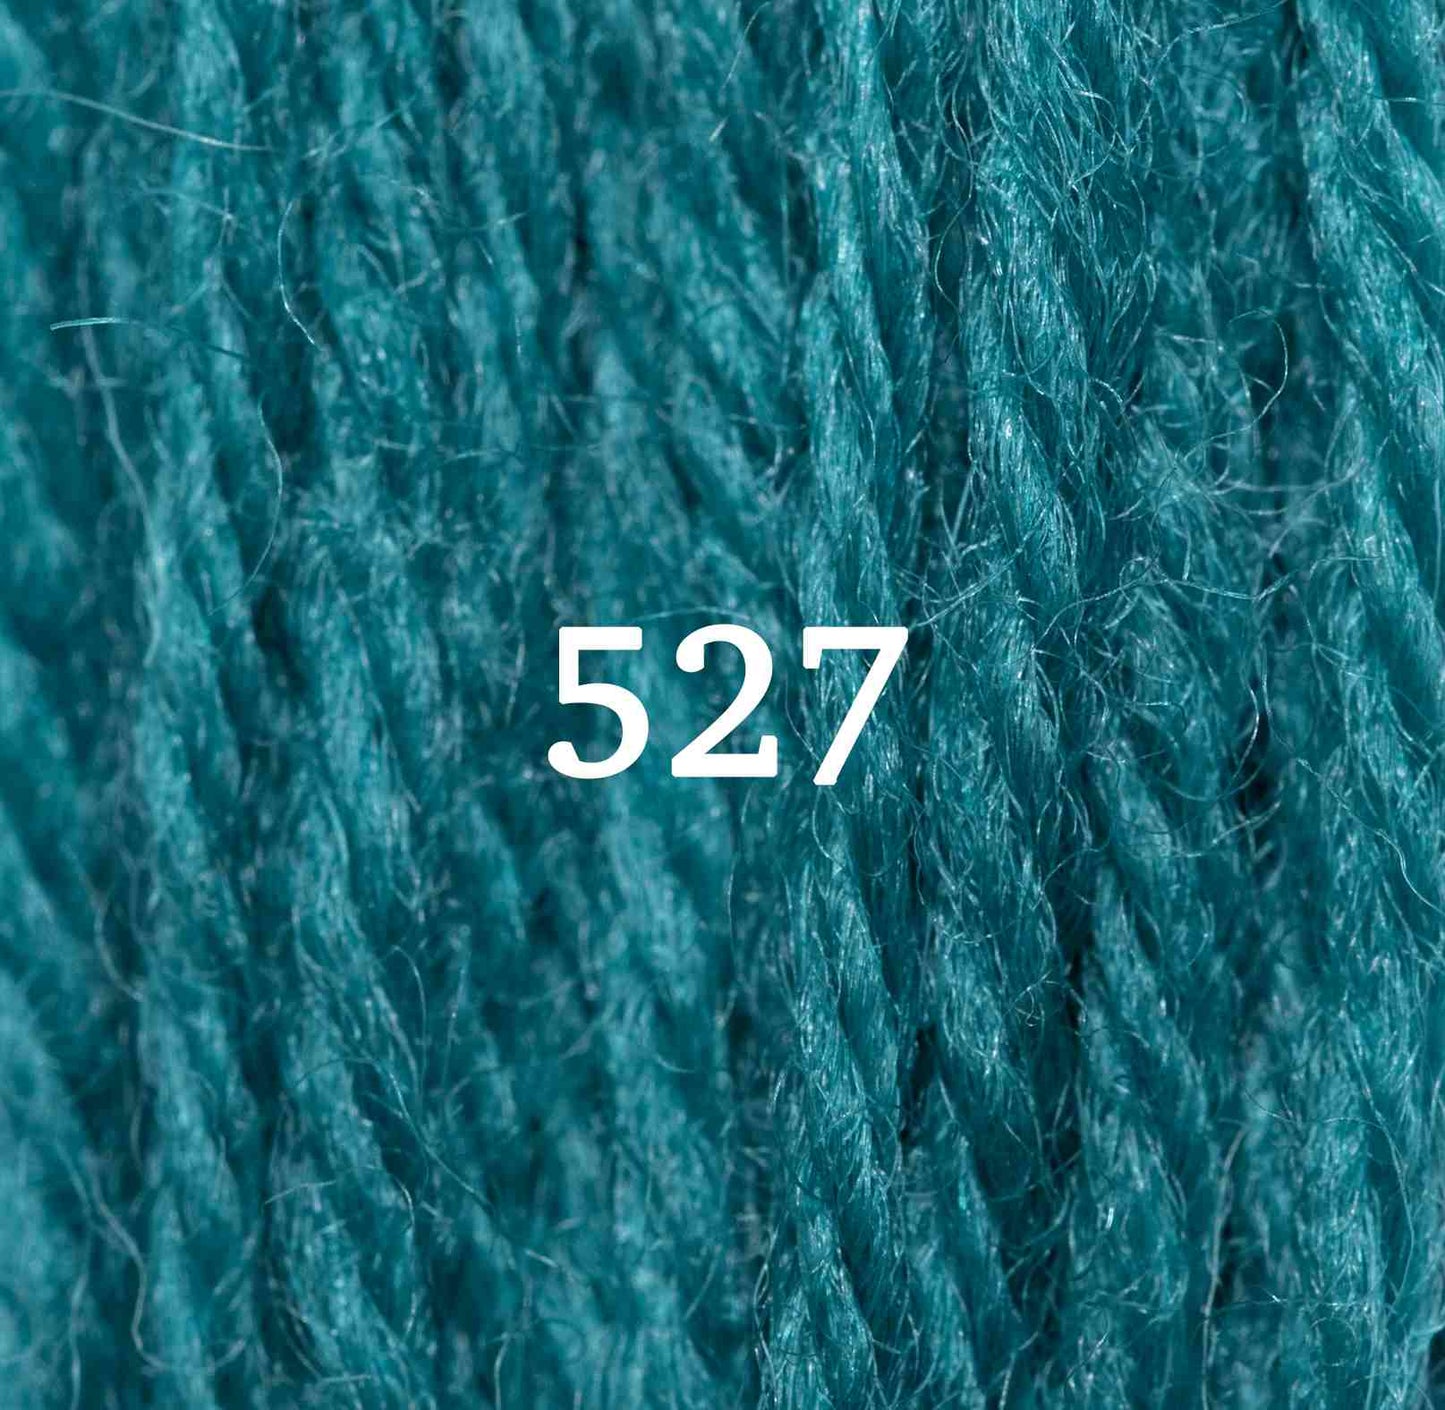 Turquoise 527